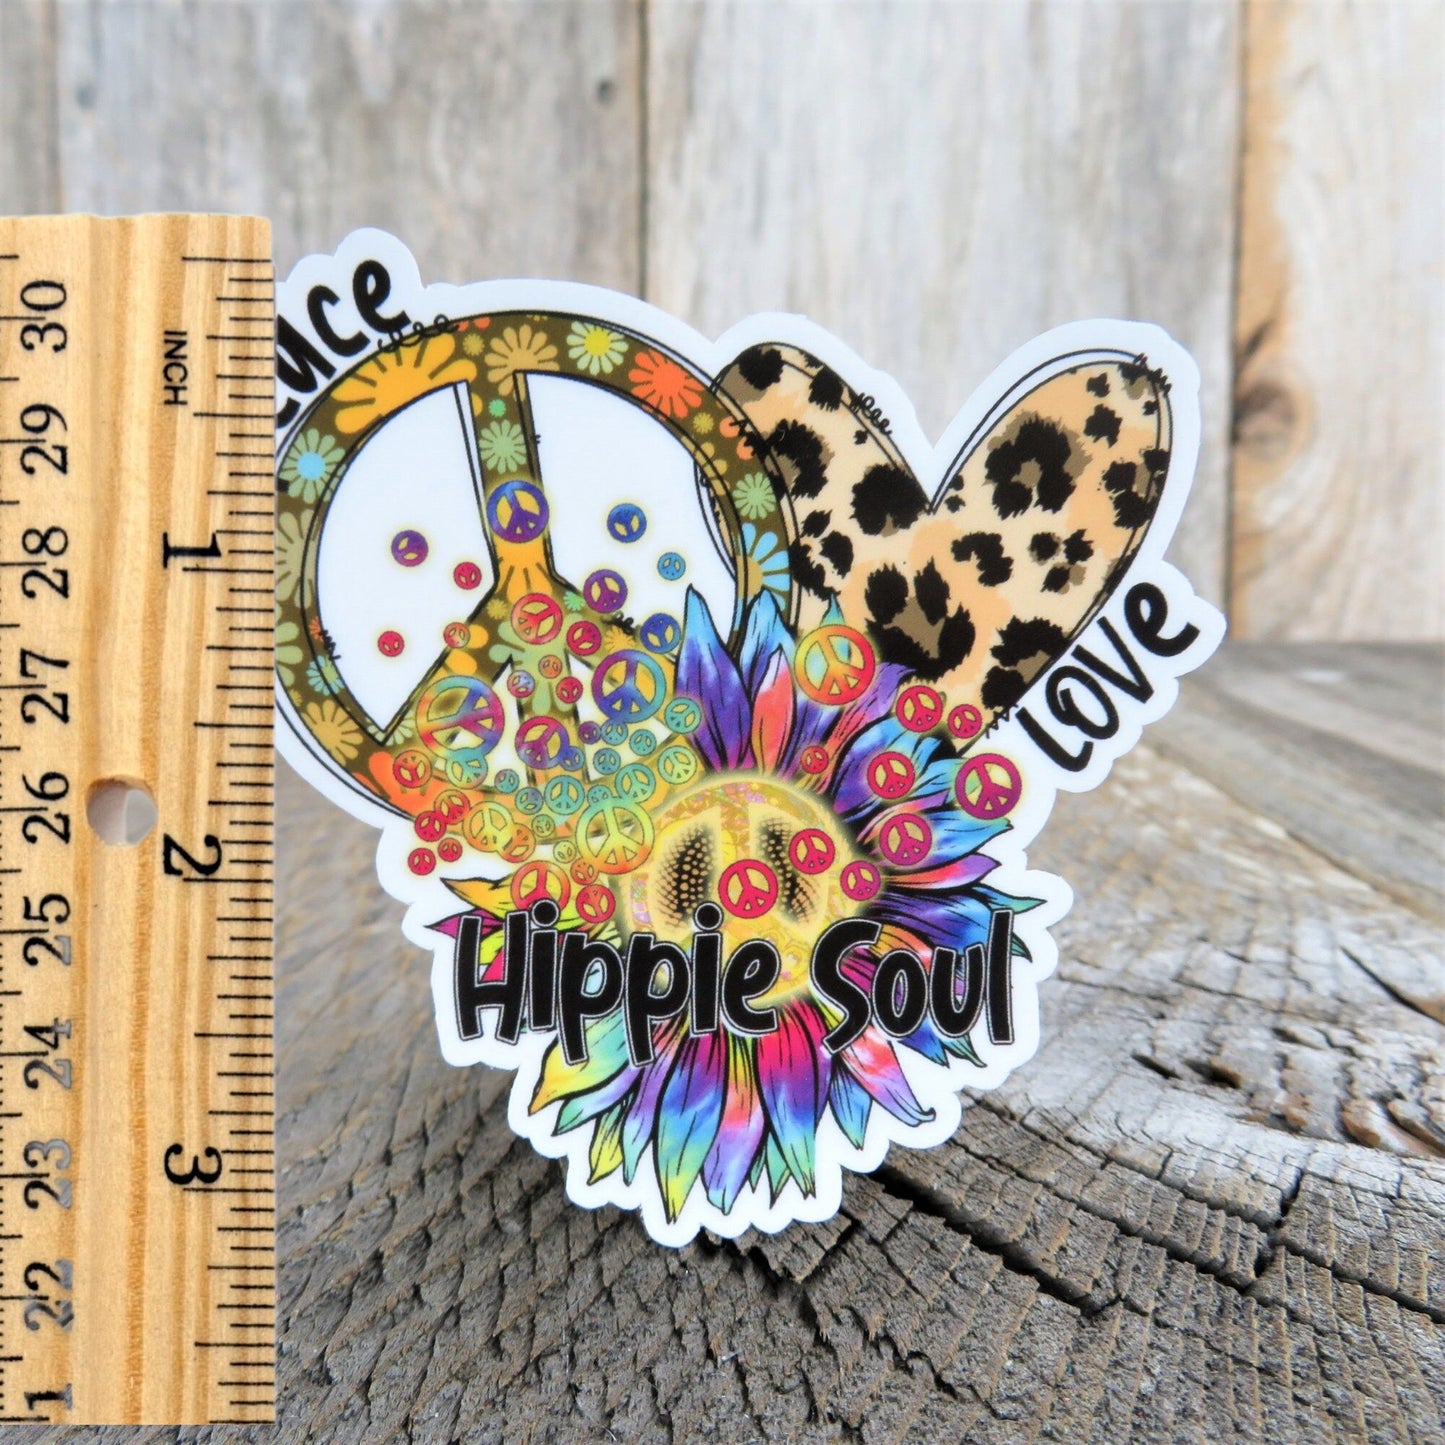 Peace Love Hippie Soul Sticker Peace Sign Heart Bright Colored Retro Hippie Flowers Waterproof Car Water Bottle Laptop